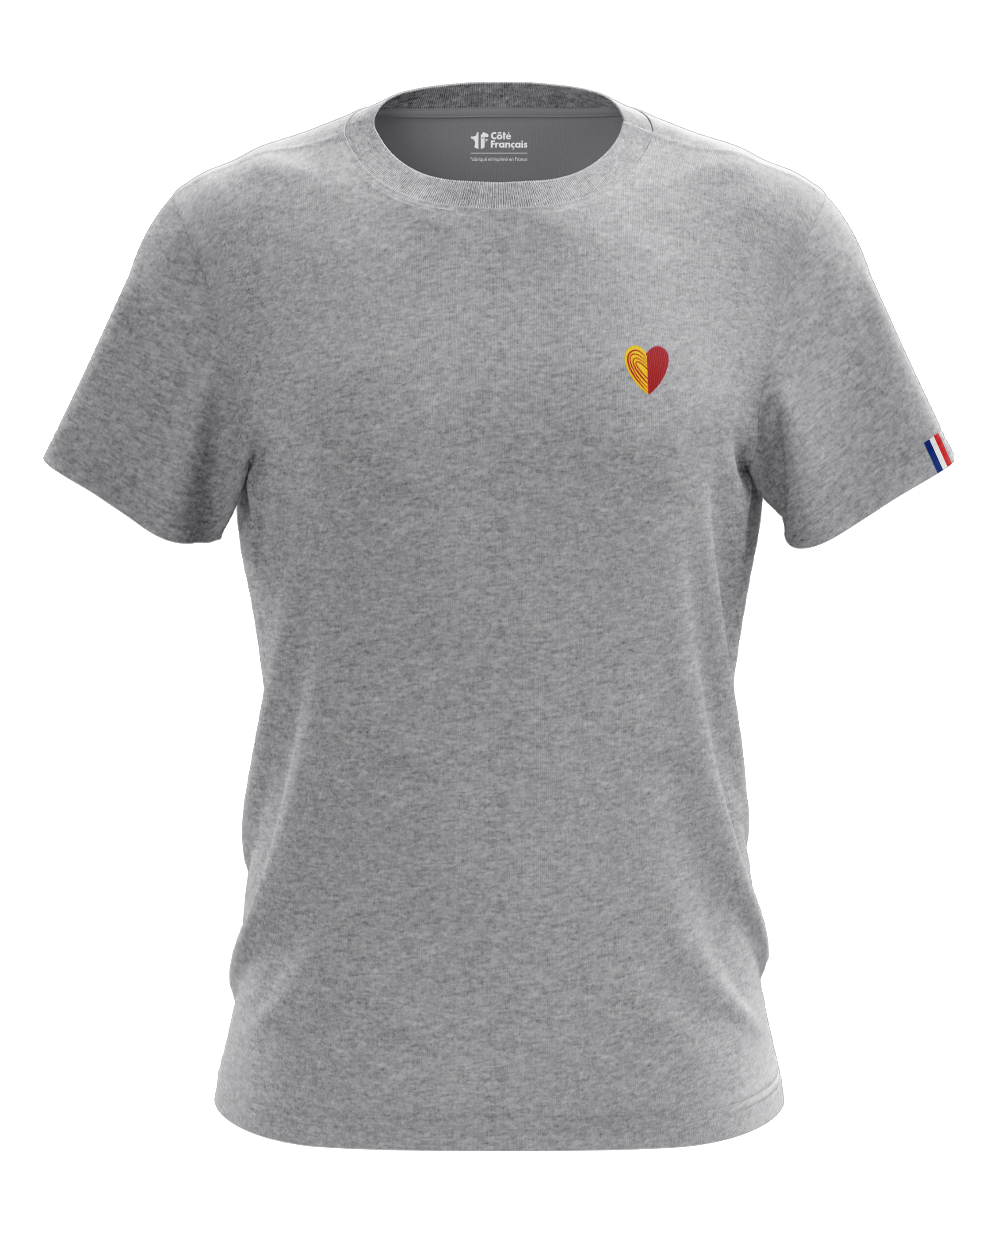 T-shirt coeur gris chiné